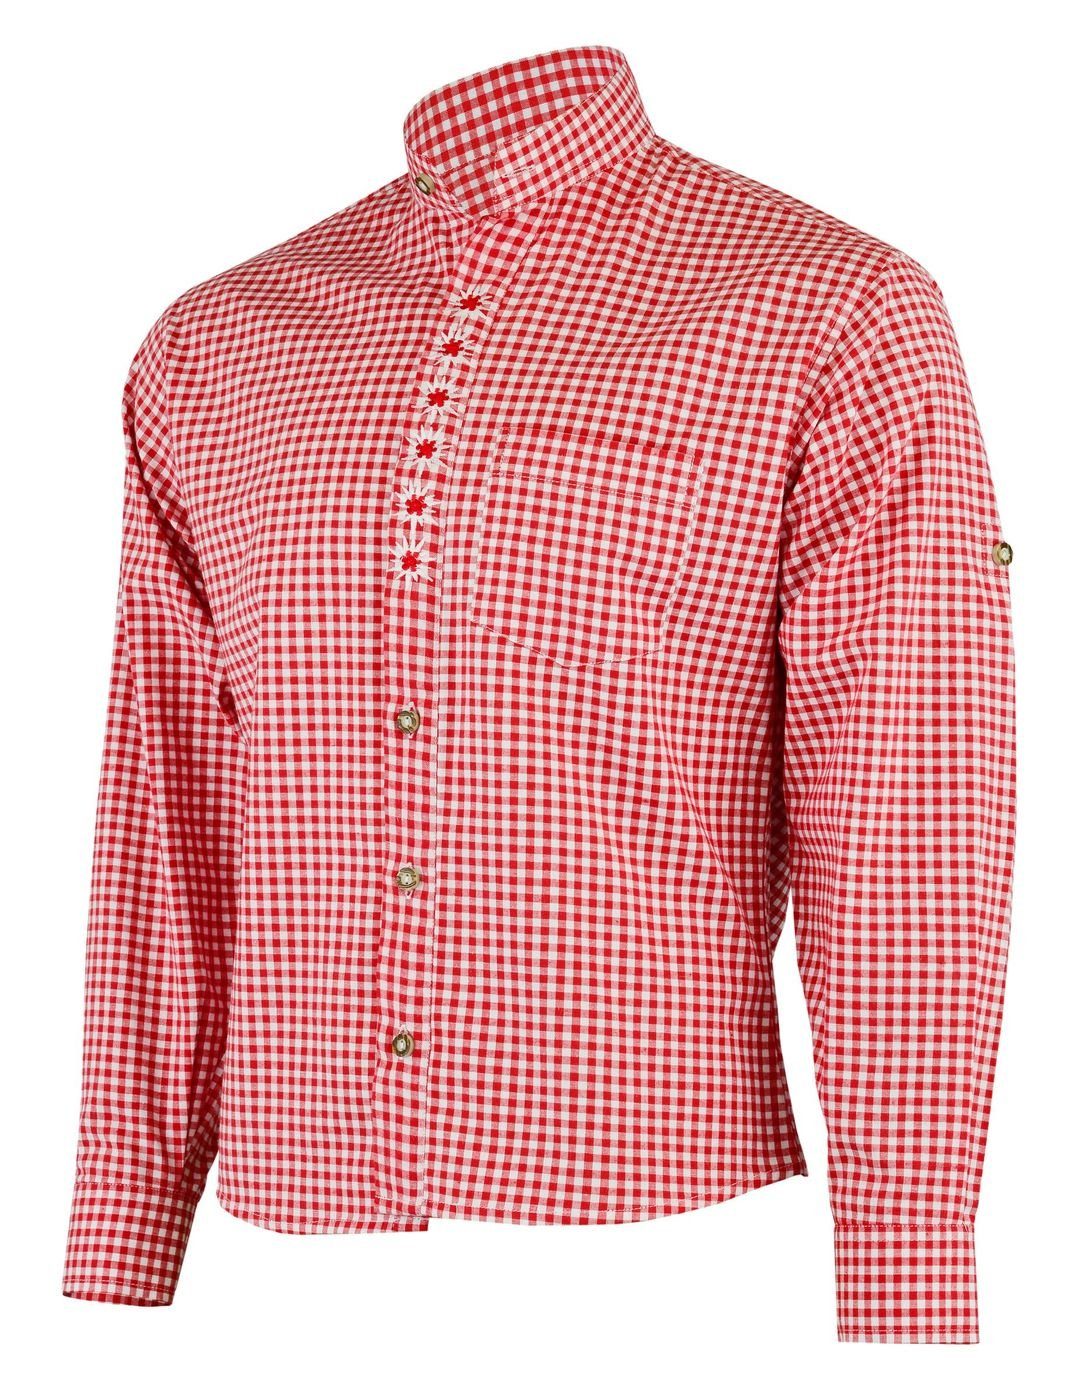 Trachtenlederhose stehkragen Rot für German mit GW1203-EW-SK Trachtenhemd Edelweiß-Stickerei Wear Trachtenhemd